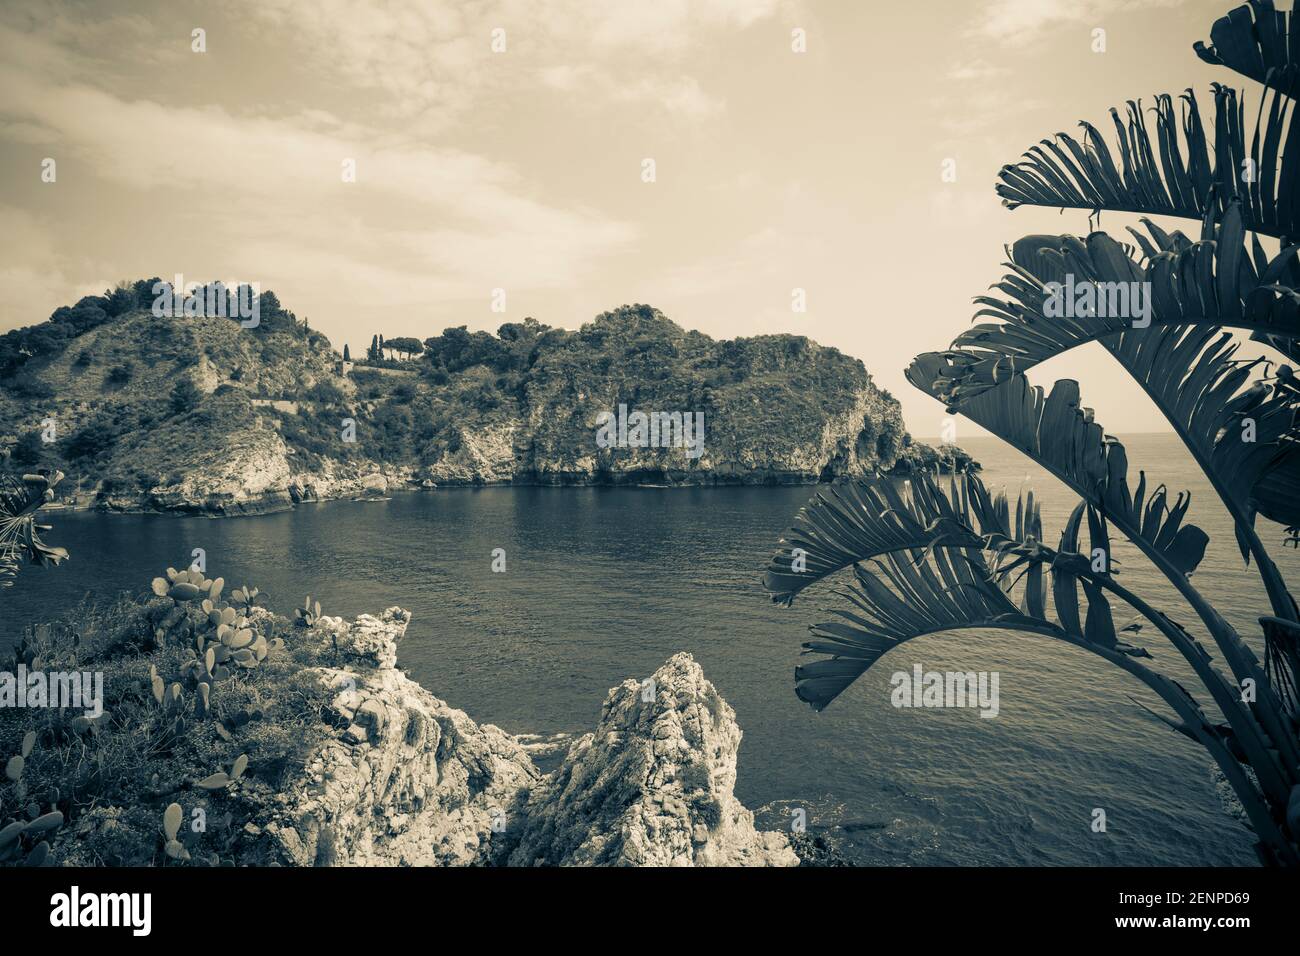 Italien, Sizilien, Taormina, Isola Bella, ein Strand- und Meeresschutzgebiet Stockfoto